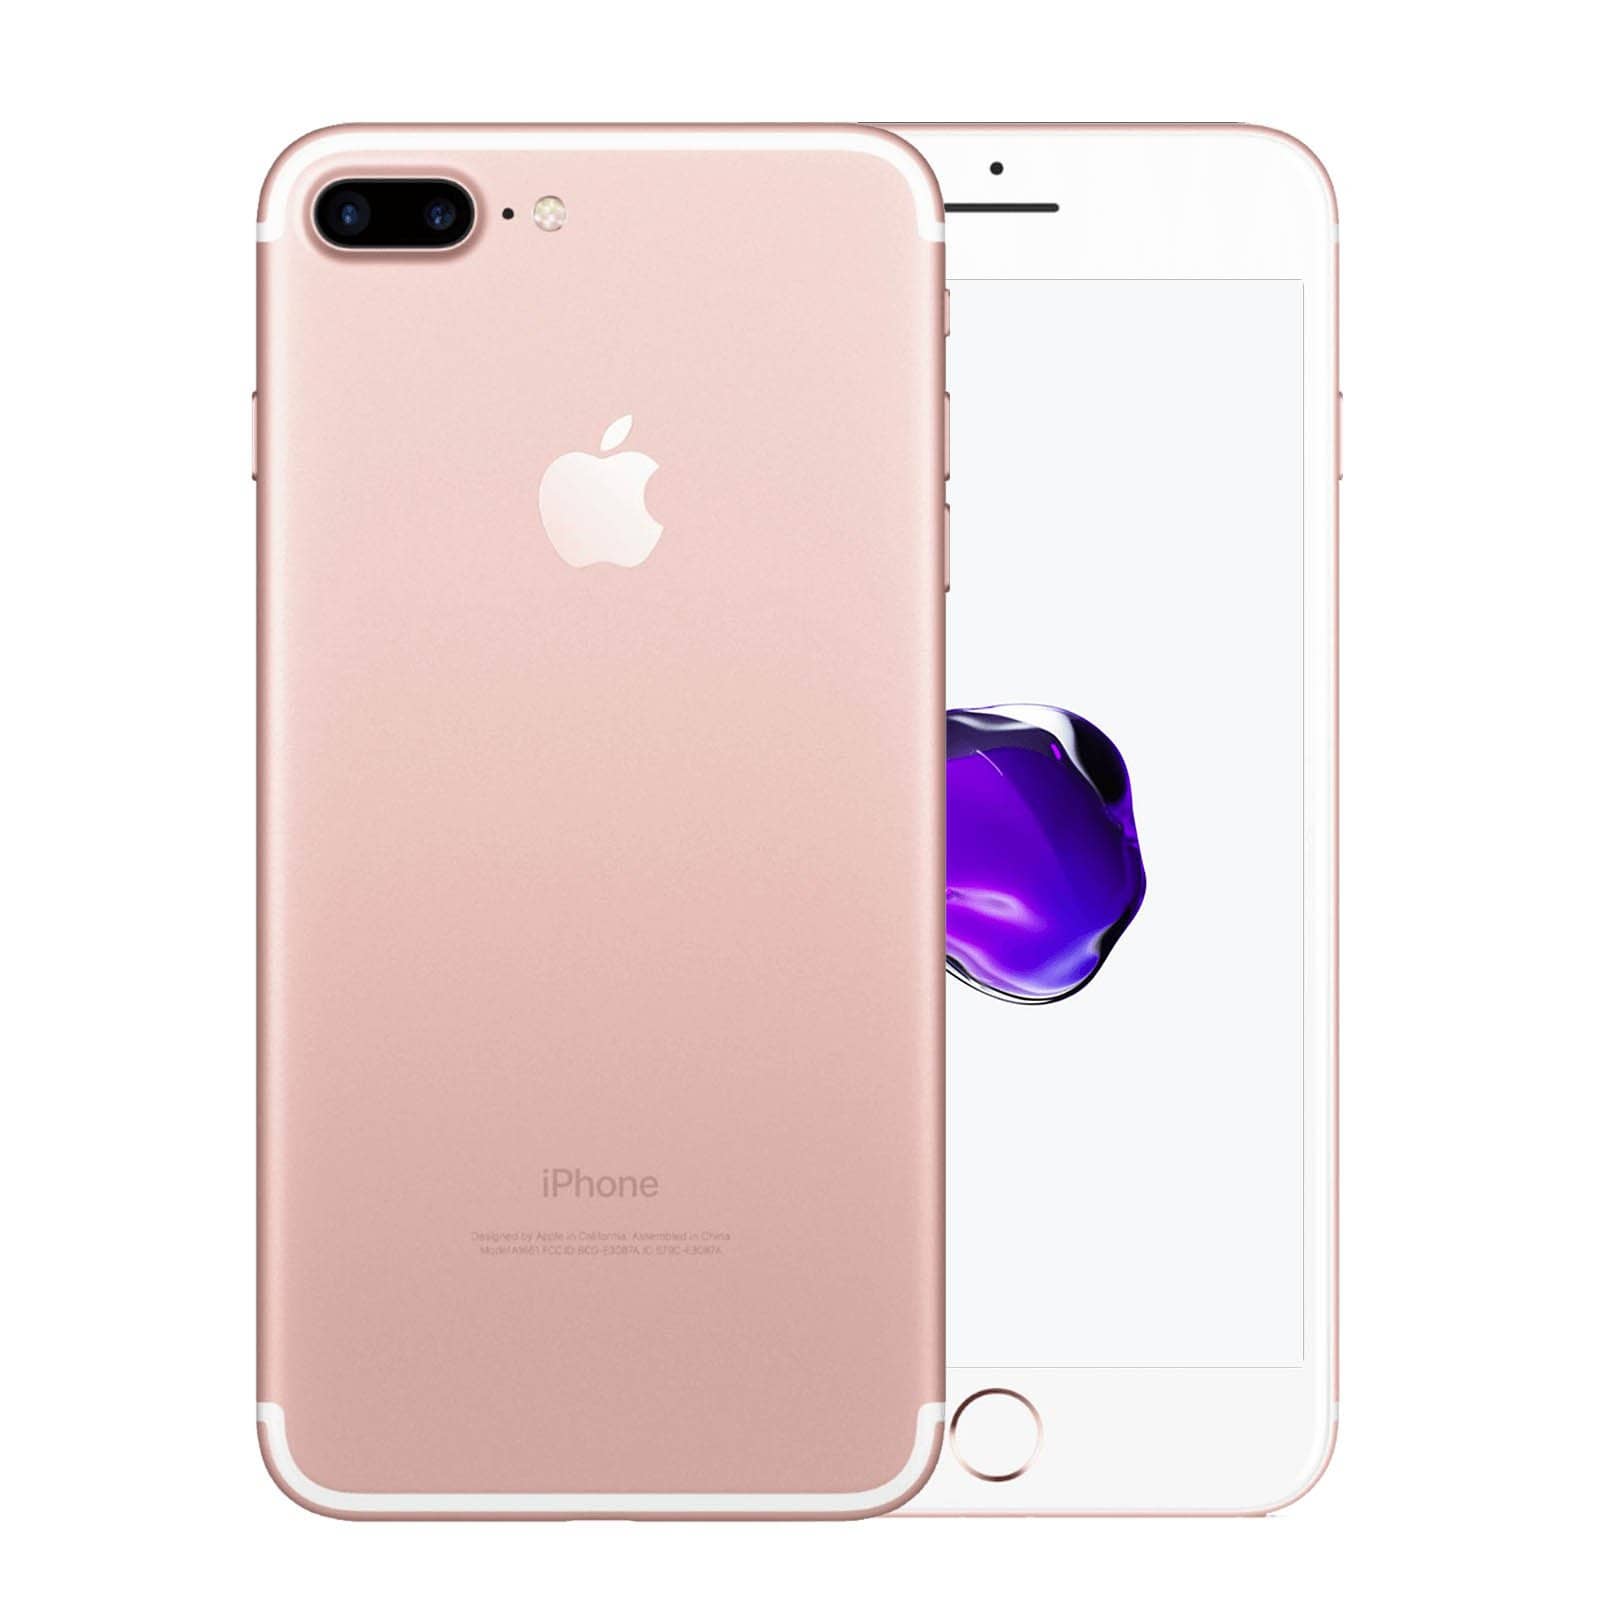 Apple iPhone 7 Plus 32GB Rose Gold Pristine - Unlocked 32GB Rose Gold Pristine